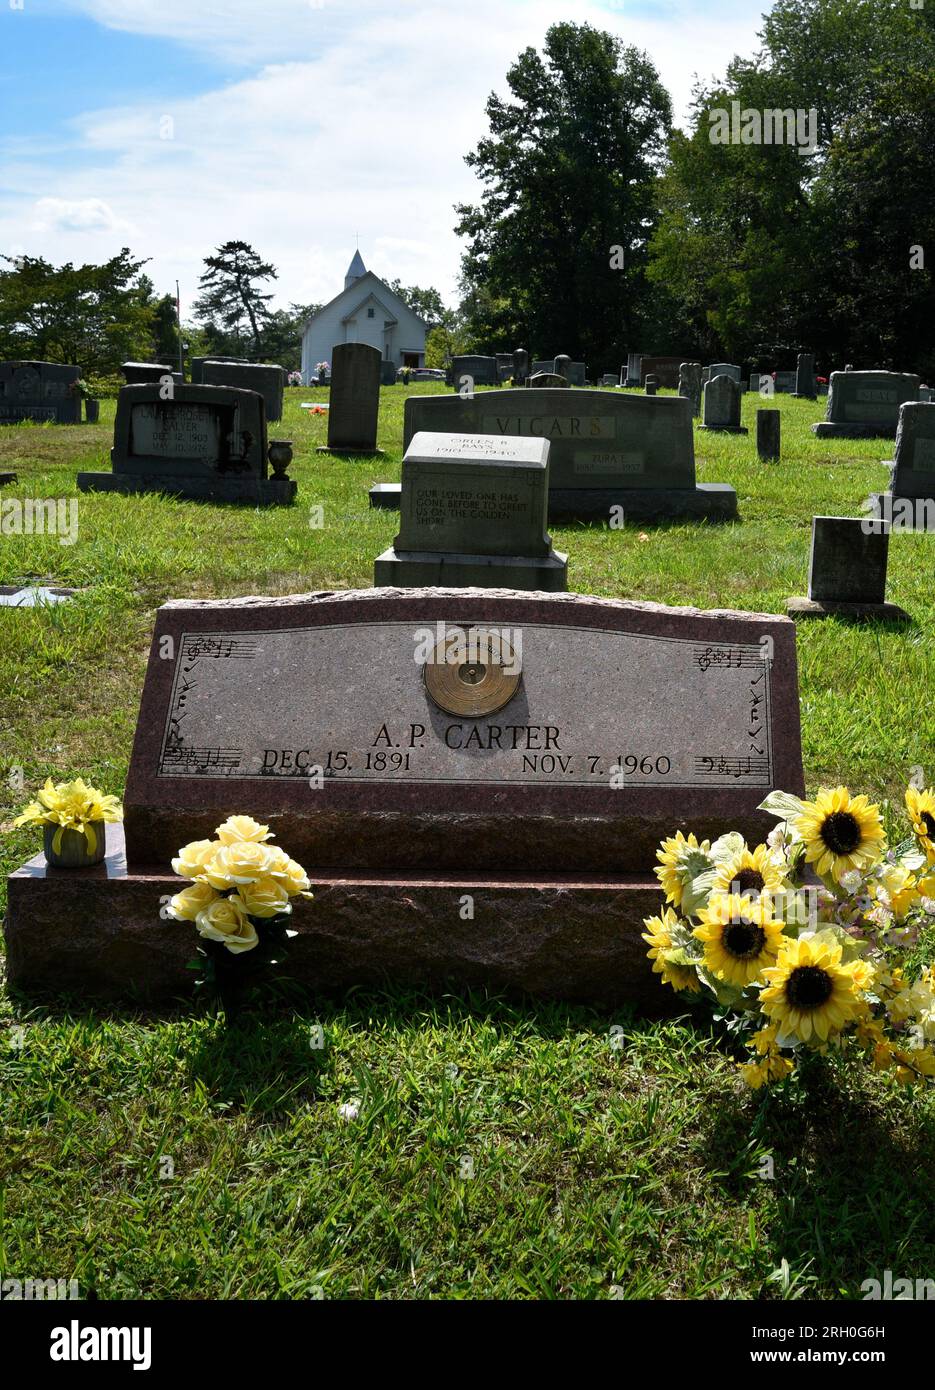 Das Grab des Pioniers und Gründers der historischen Carter Family in Maces Spring im ländlichen Südwesten Virginias (siehe zusätzliche Informationen). Stockfoto